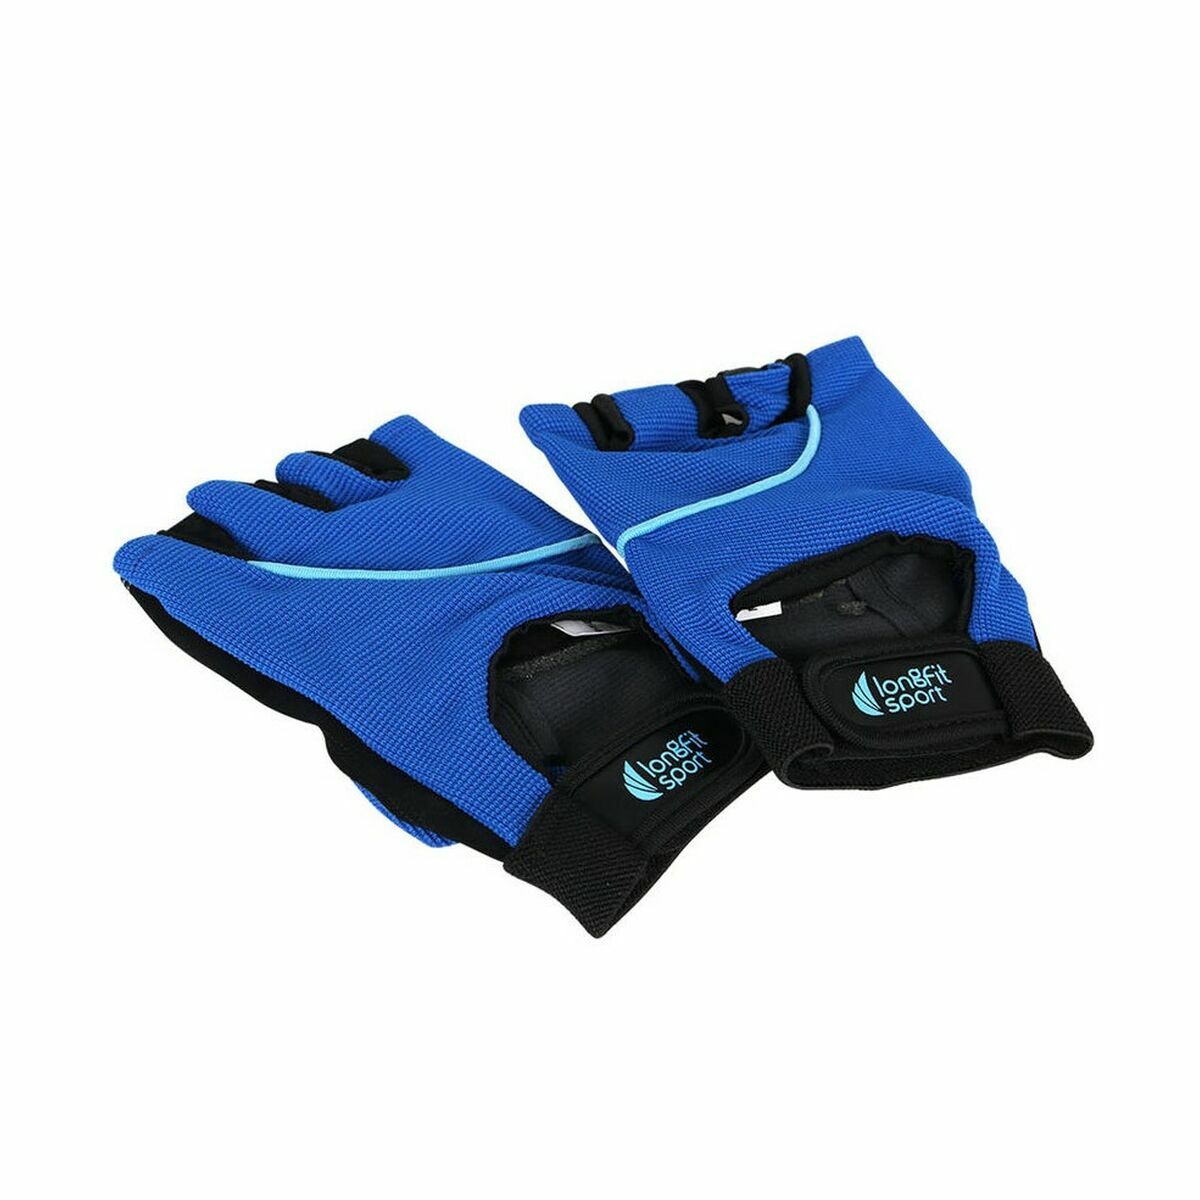 Gants d'Entraînement LongFit Sport Longfit sport Bleu/Noir